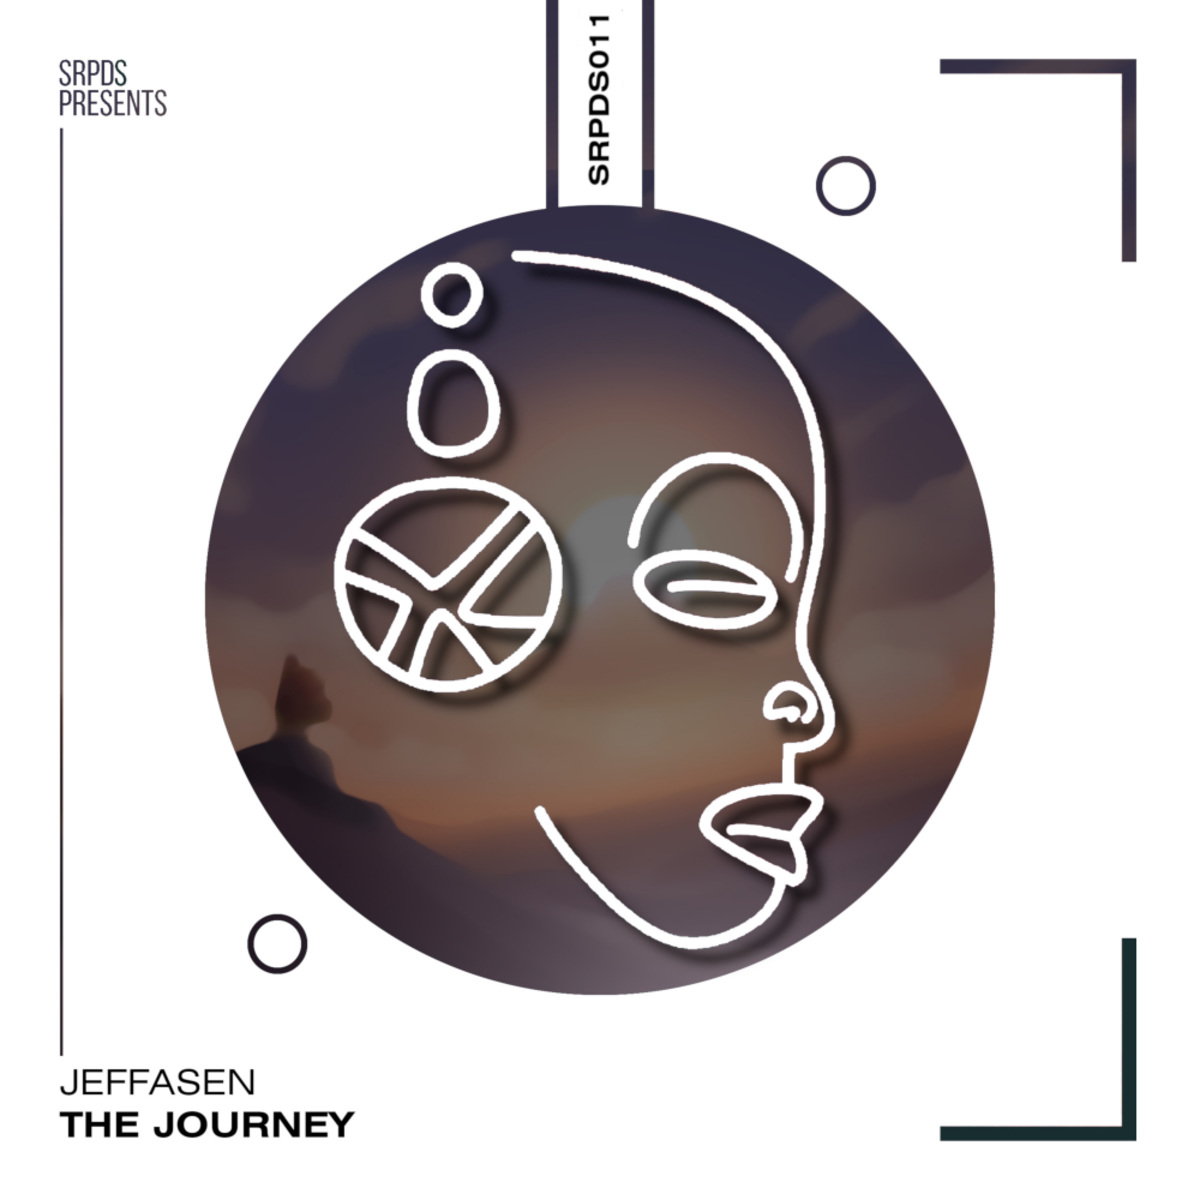 Jeffasen - The Journey EP / SRPDS